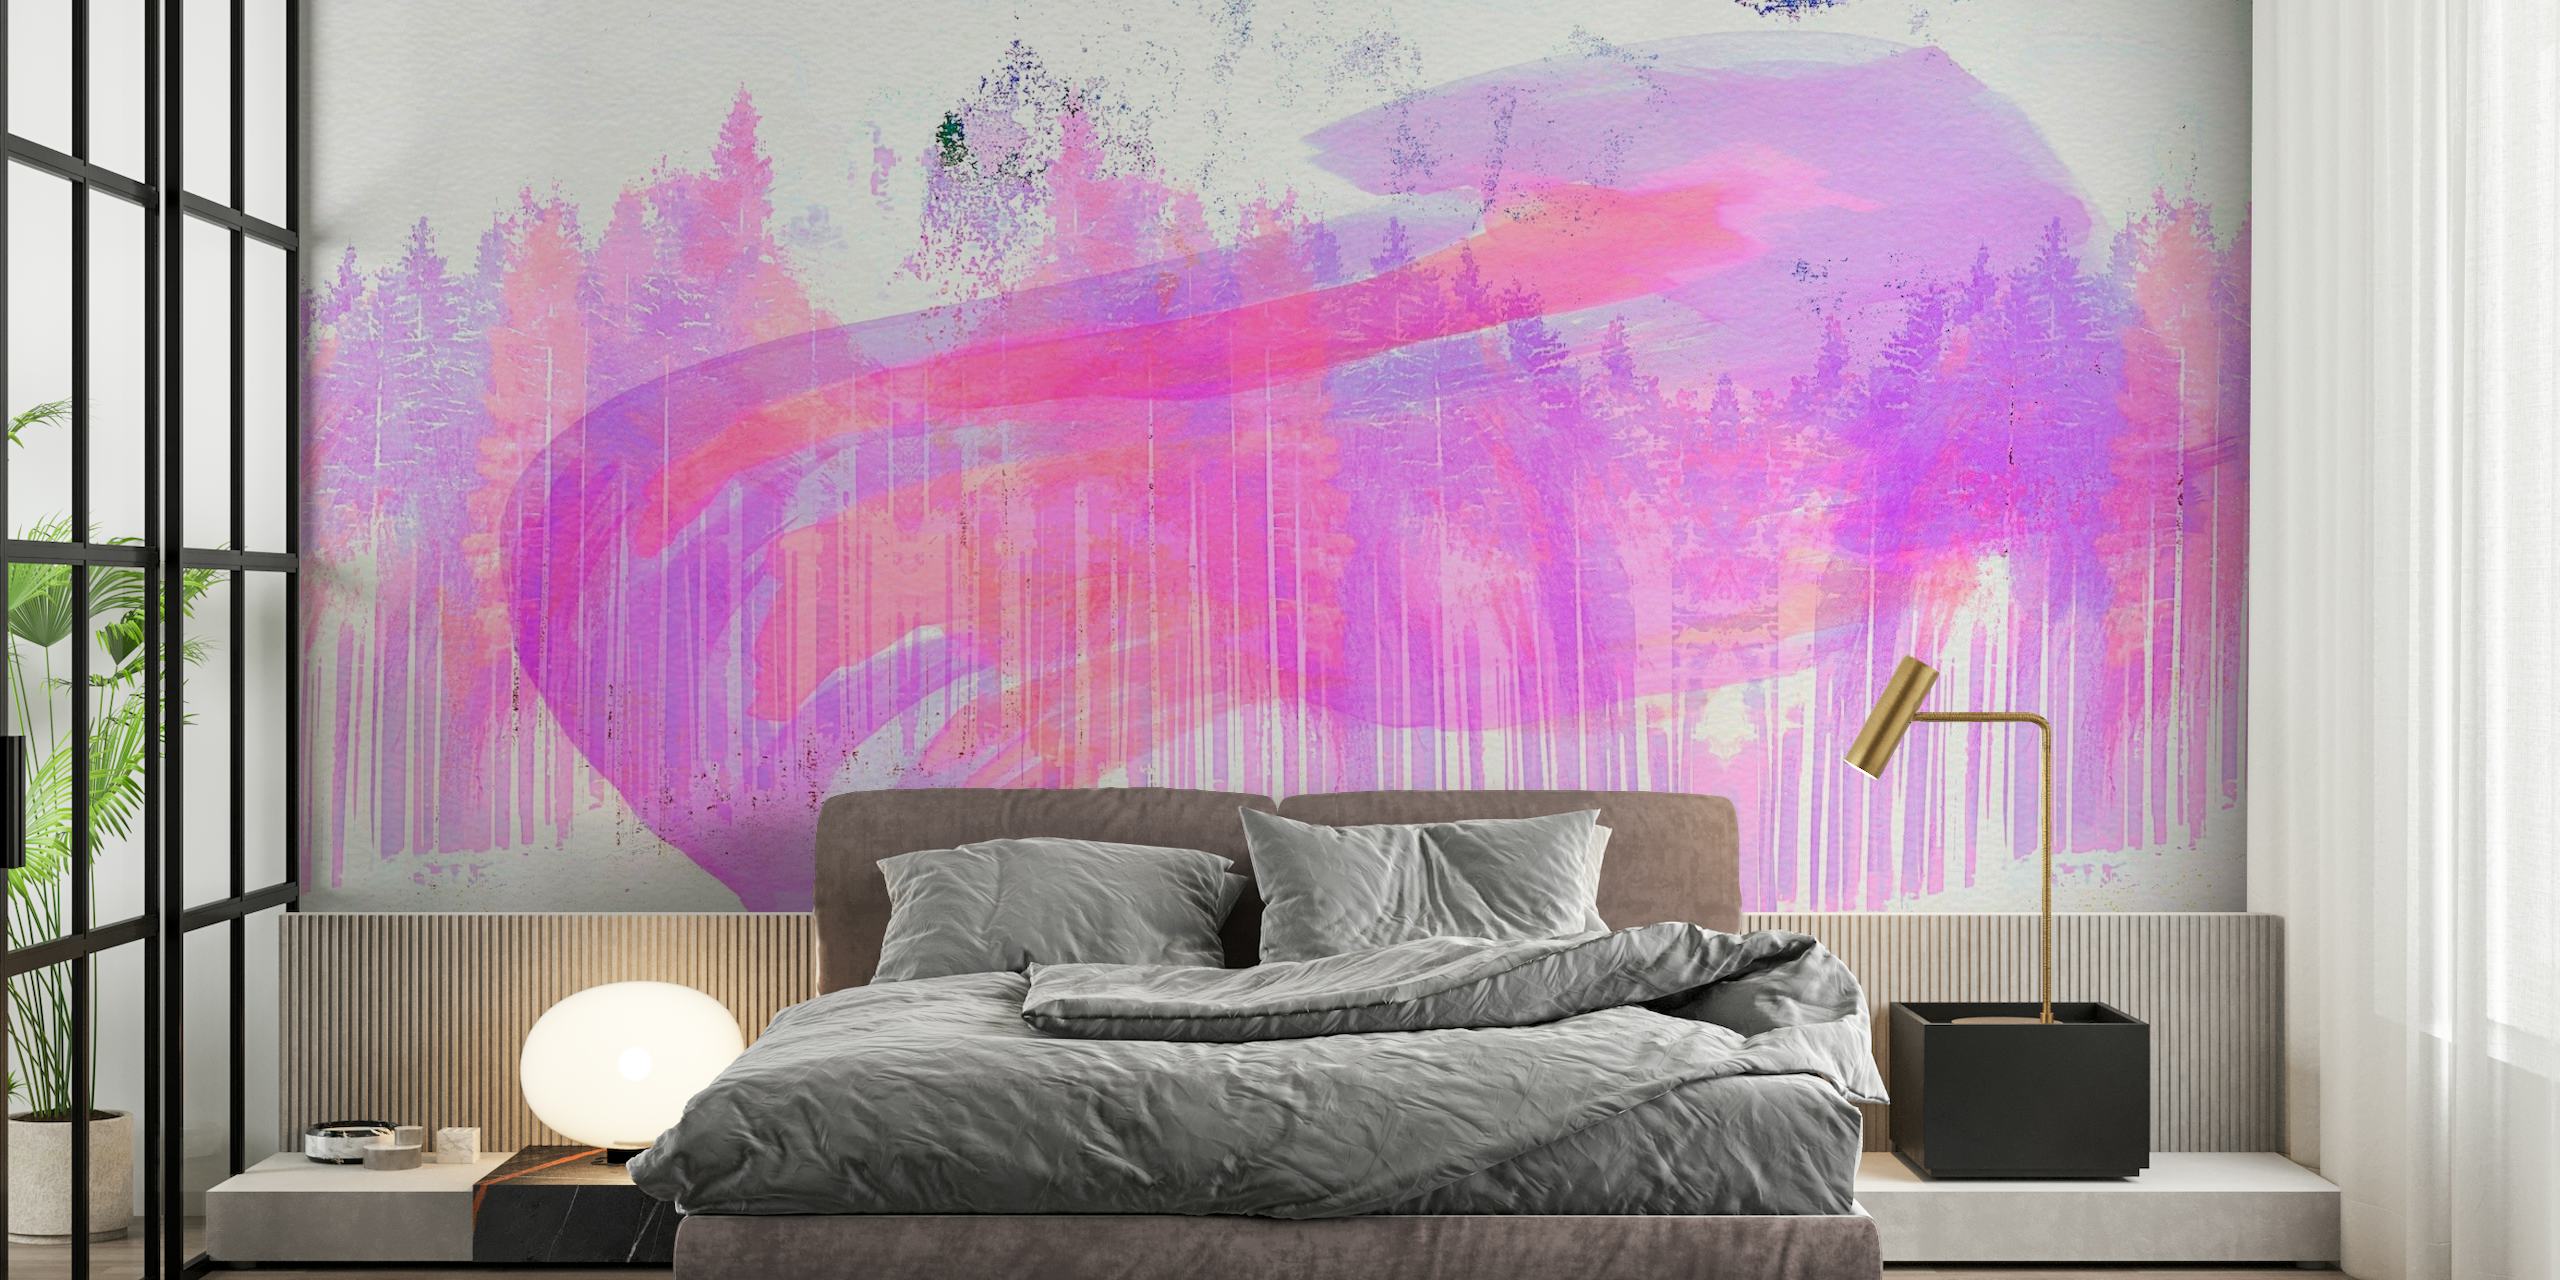 Fotomural vinílico de parede abstrato de floresta rosa com design etéreo